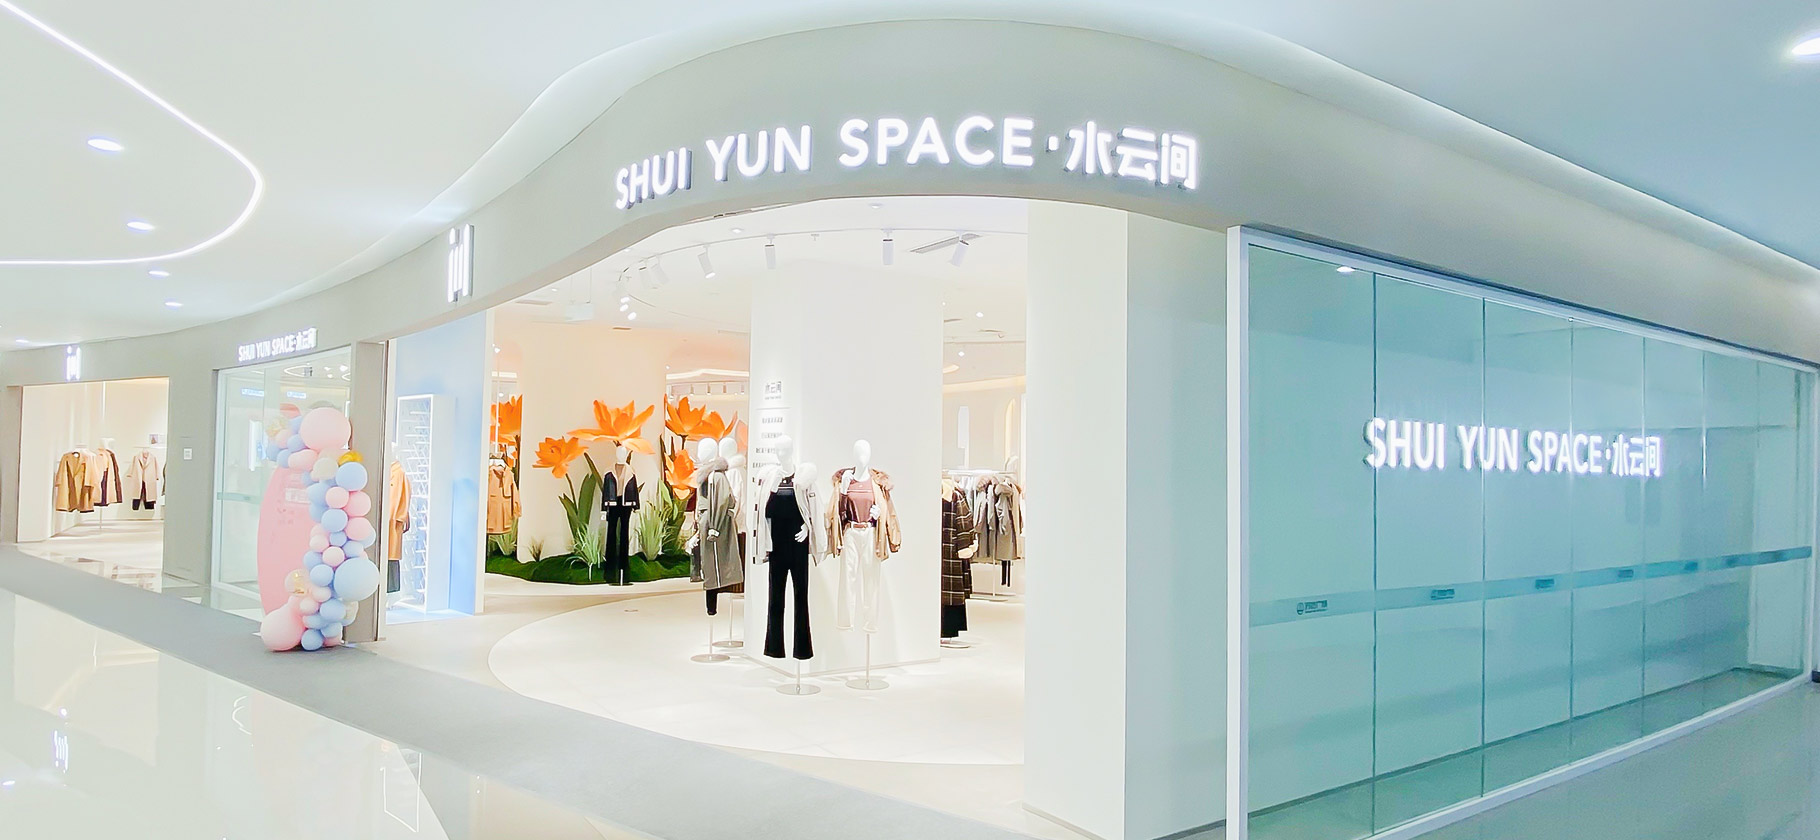 水云间-SHUI YUN JIAN集合店已发展了零售终端店铺超过600间